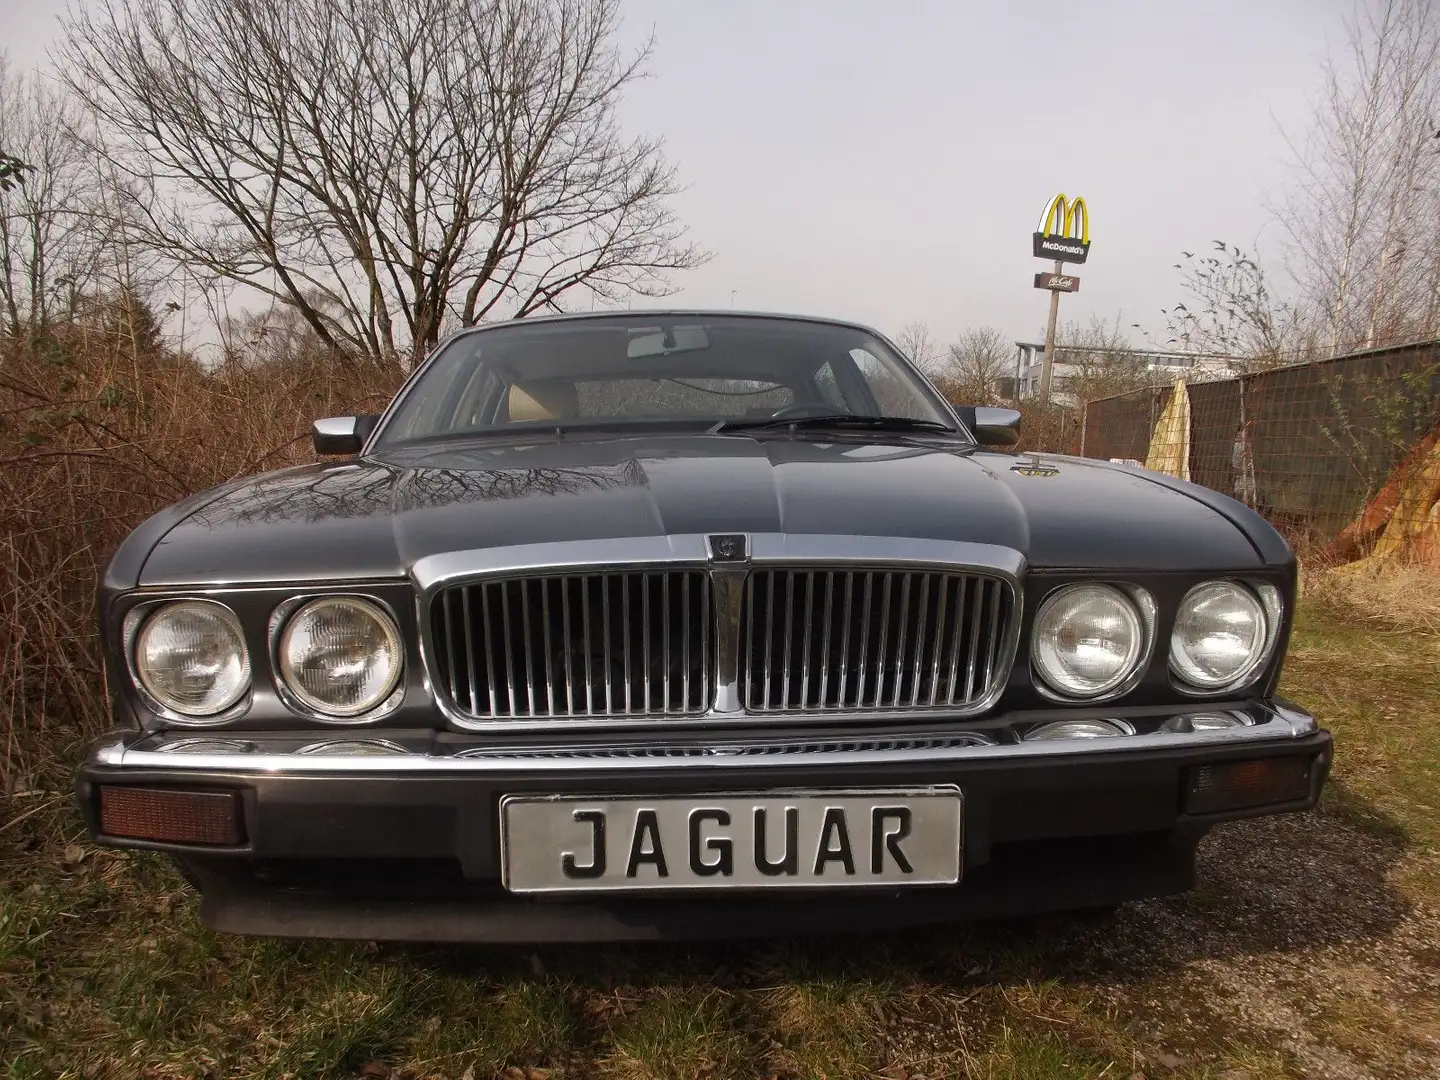 Jaguar XJ40 ein echter Oldtimer (!) vom Allerfeinsten! Barna - 2